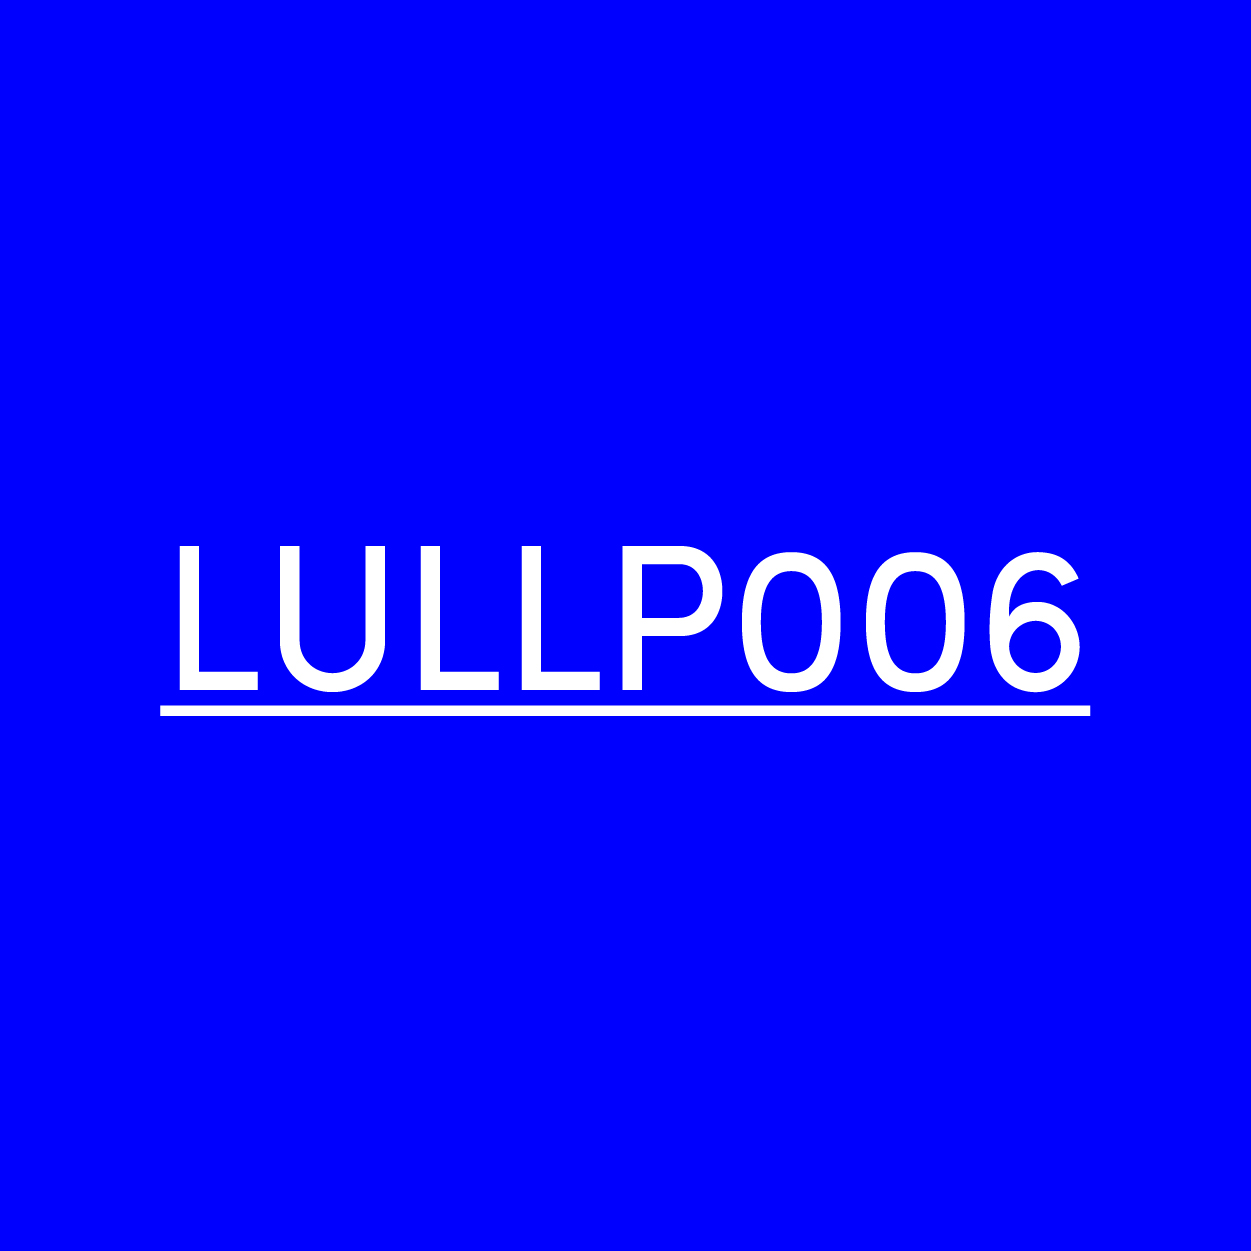 lullp_006_1b_220407